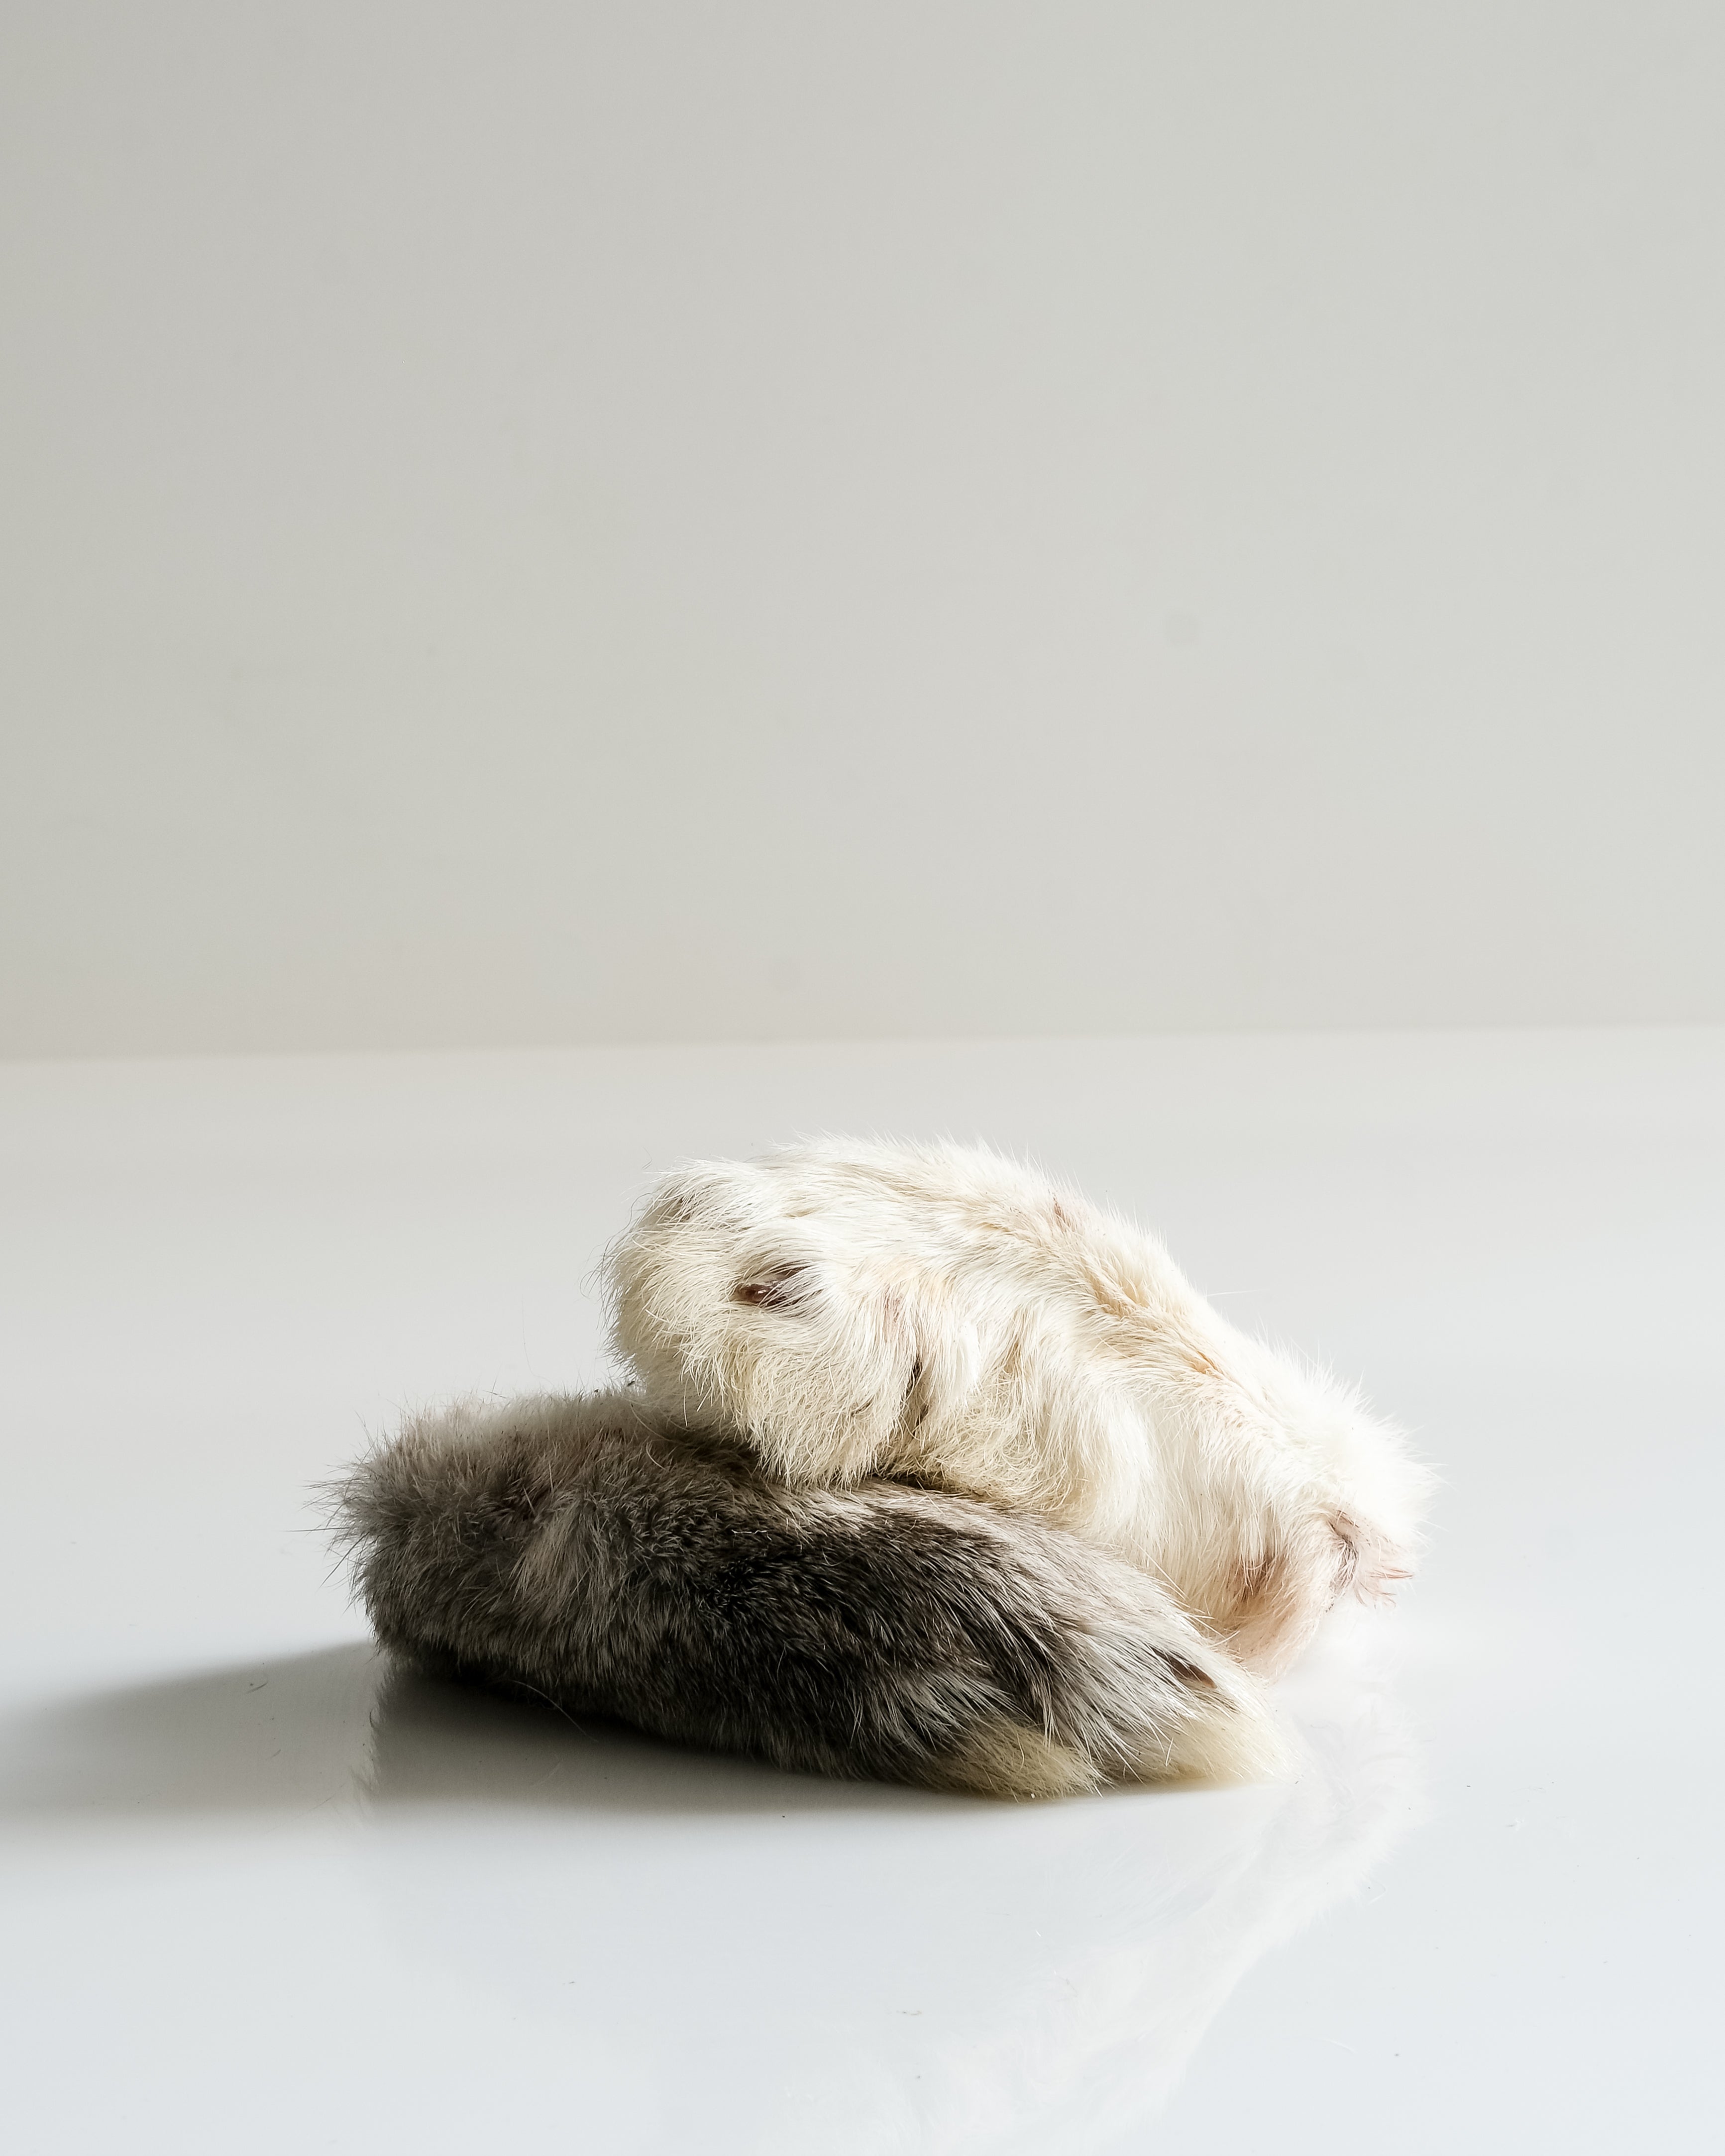 Air-Dried Rabbit Feet